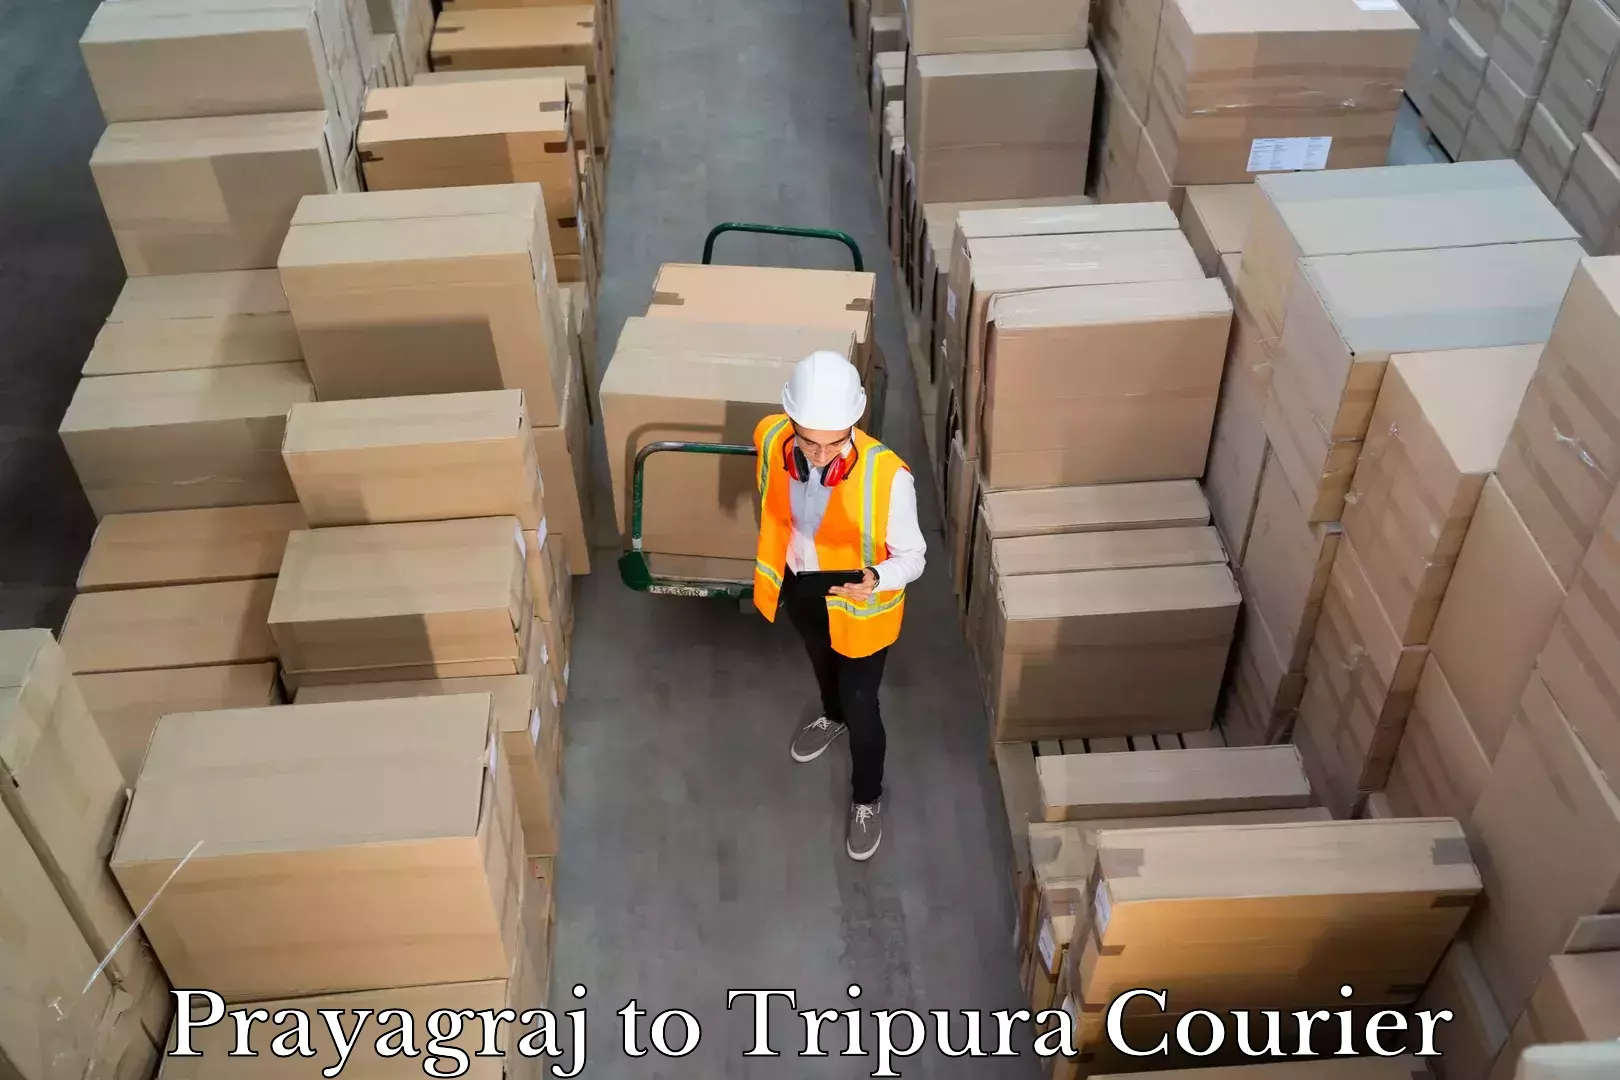 Personal effects shipping Prayagraj to Udaipur Tripura